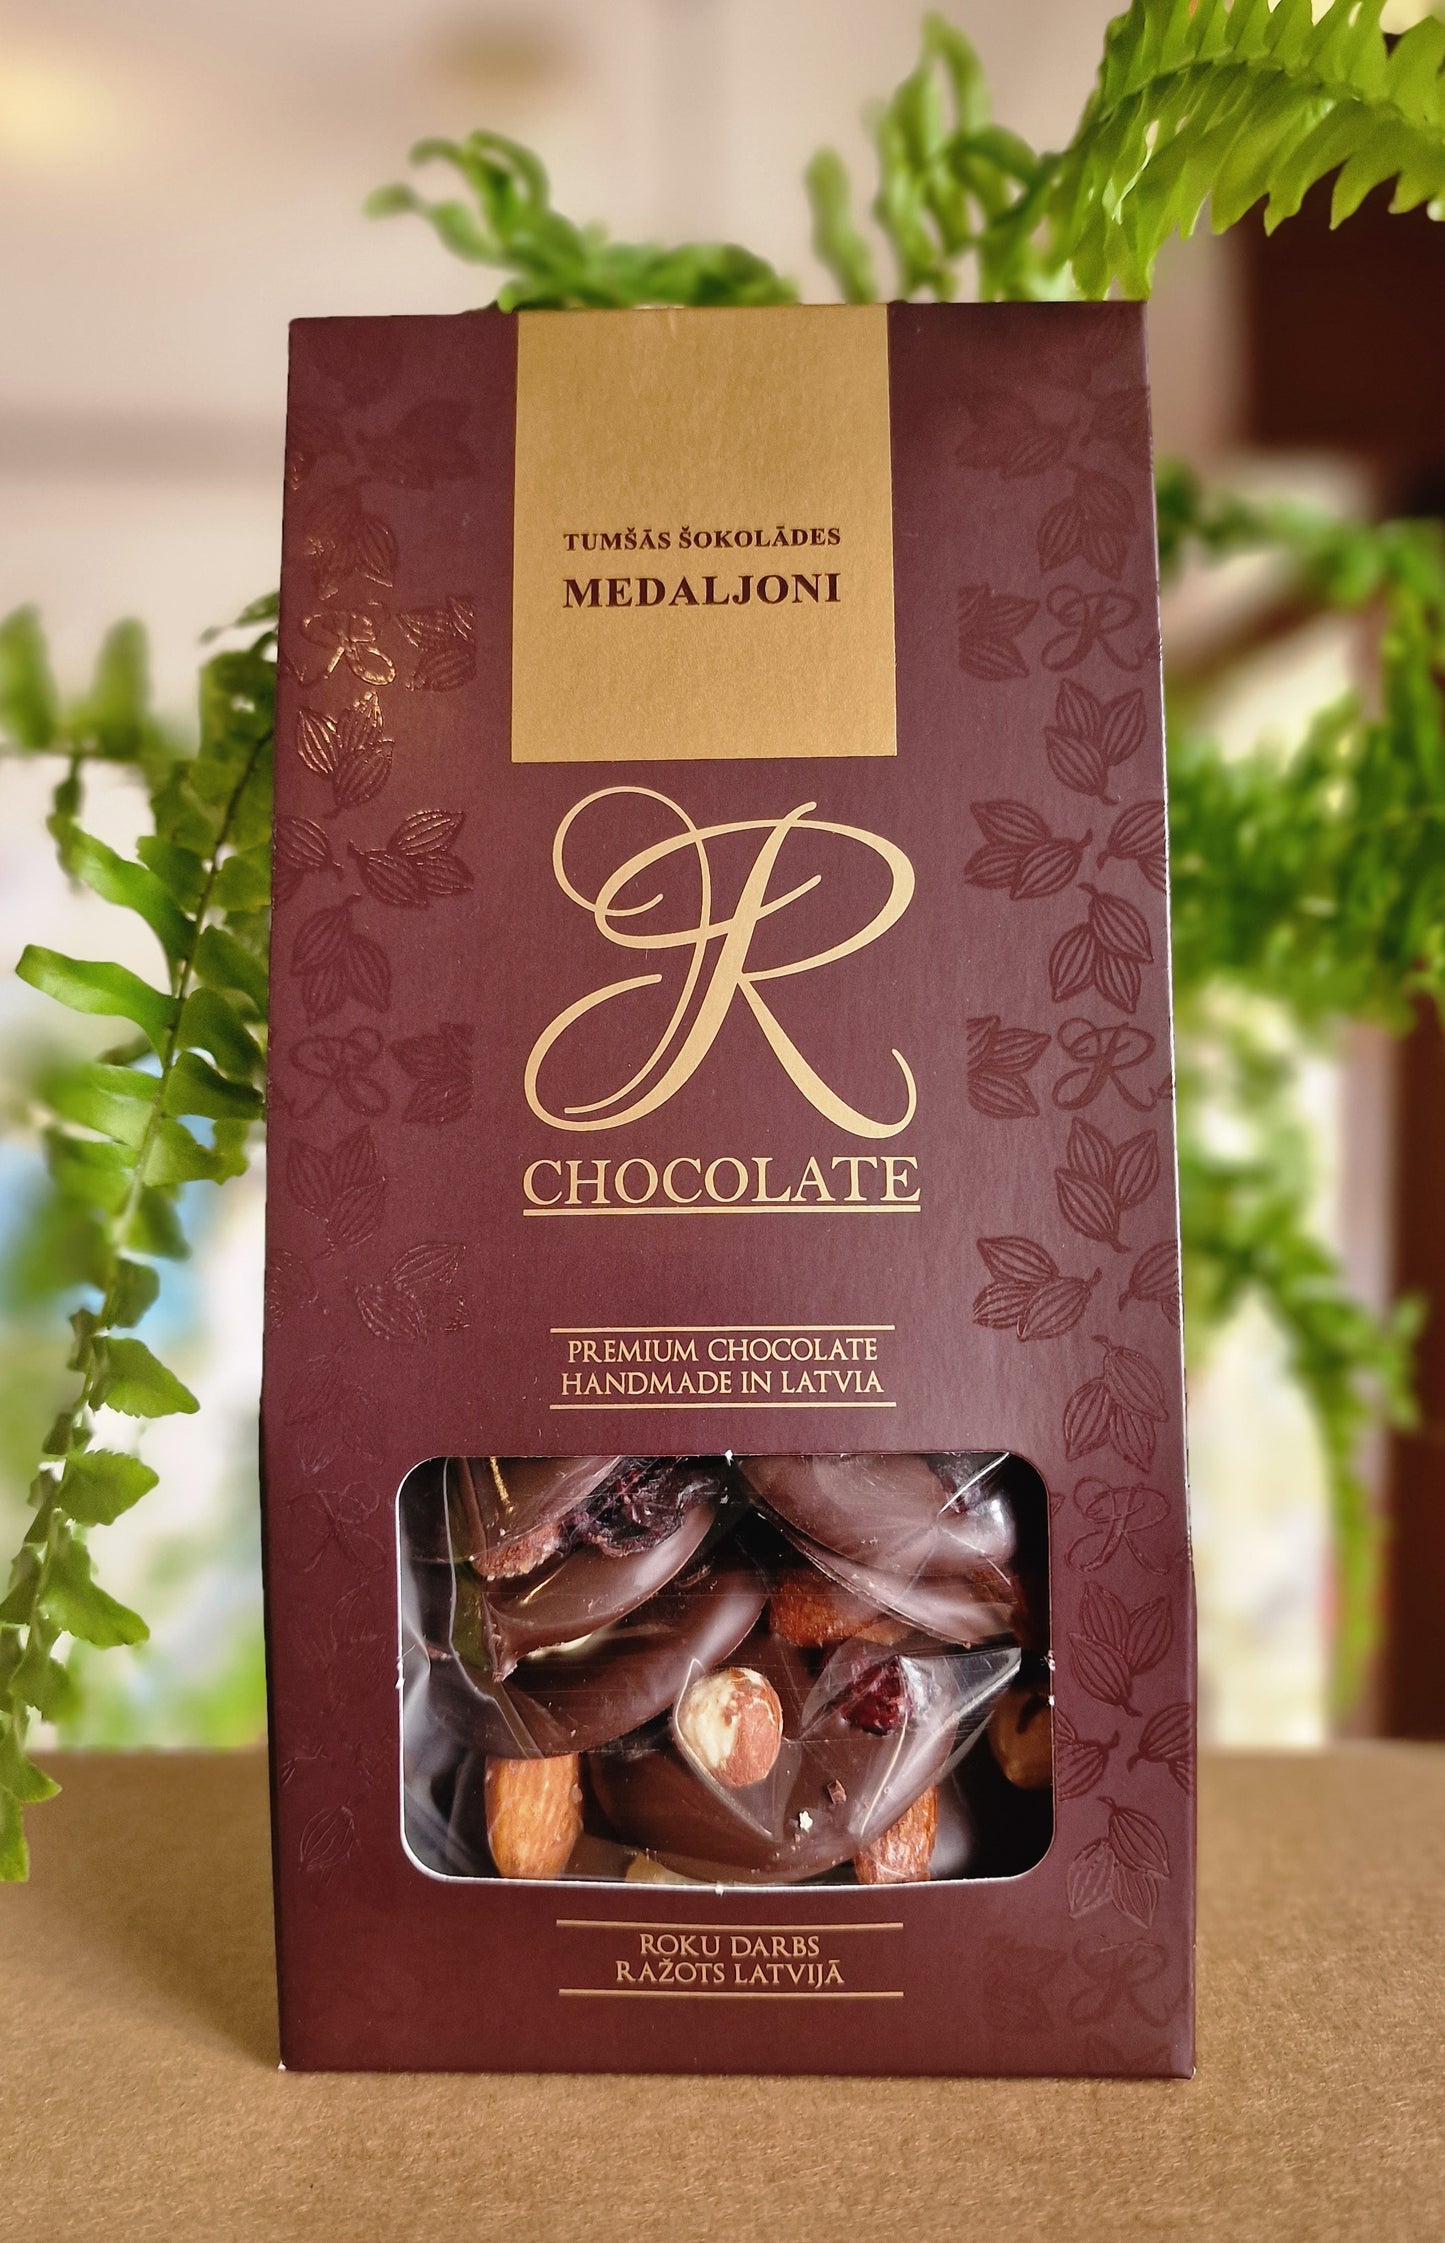 Rchocolate tumšās šokolādes MEDALJONI